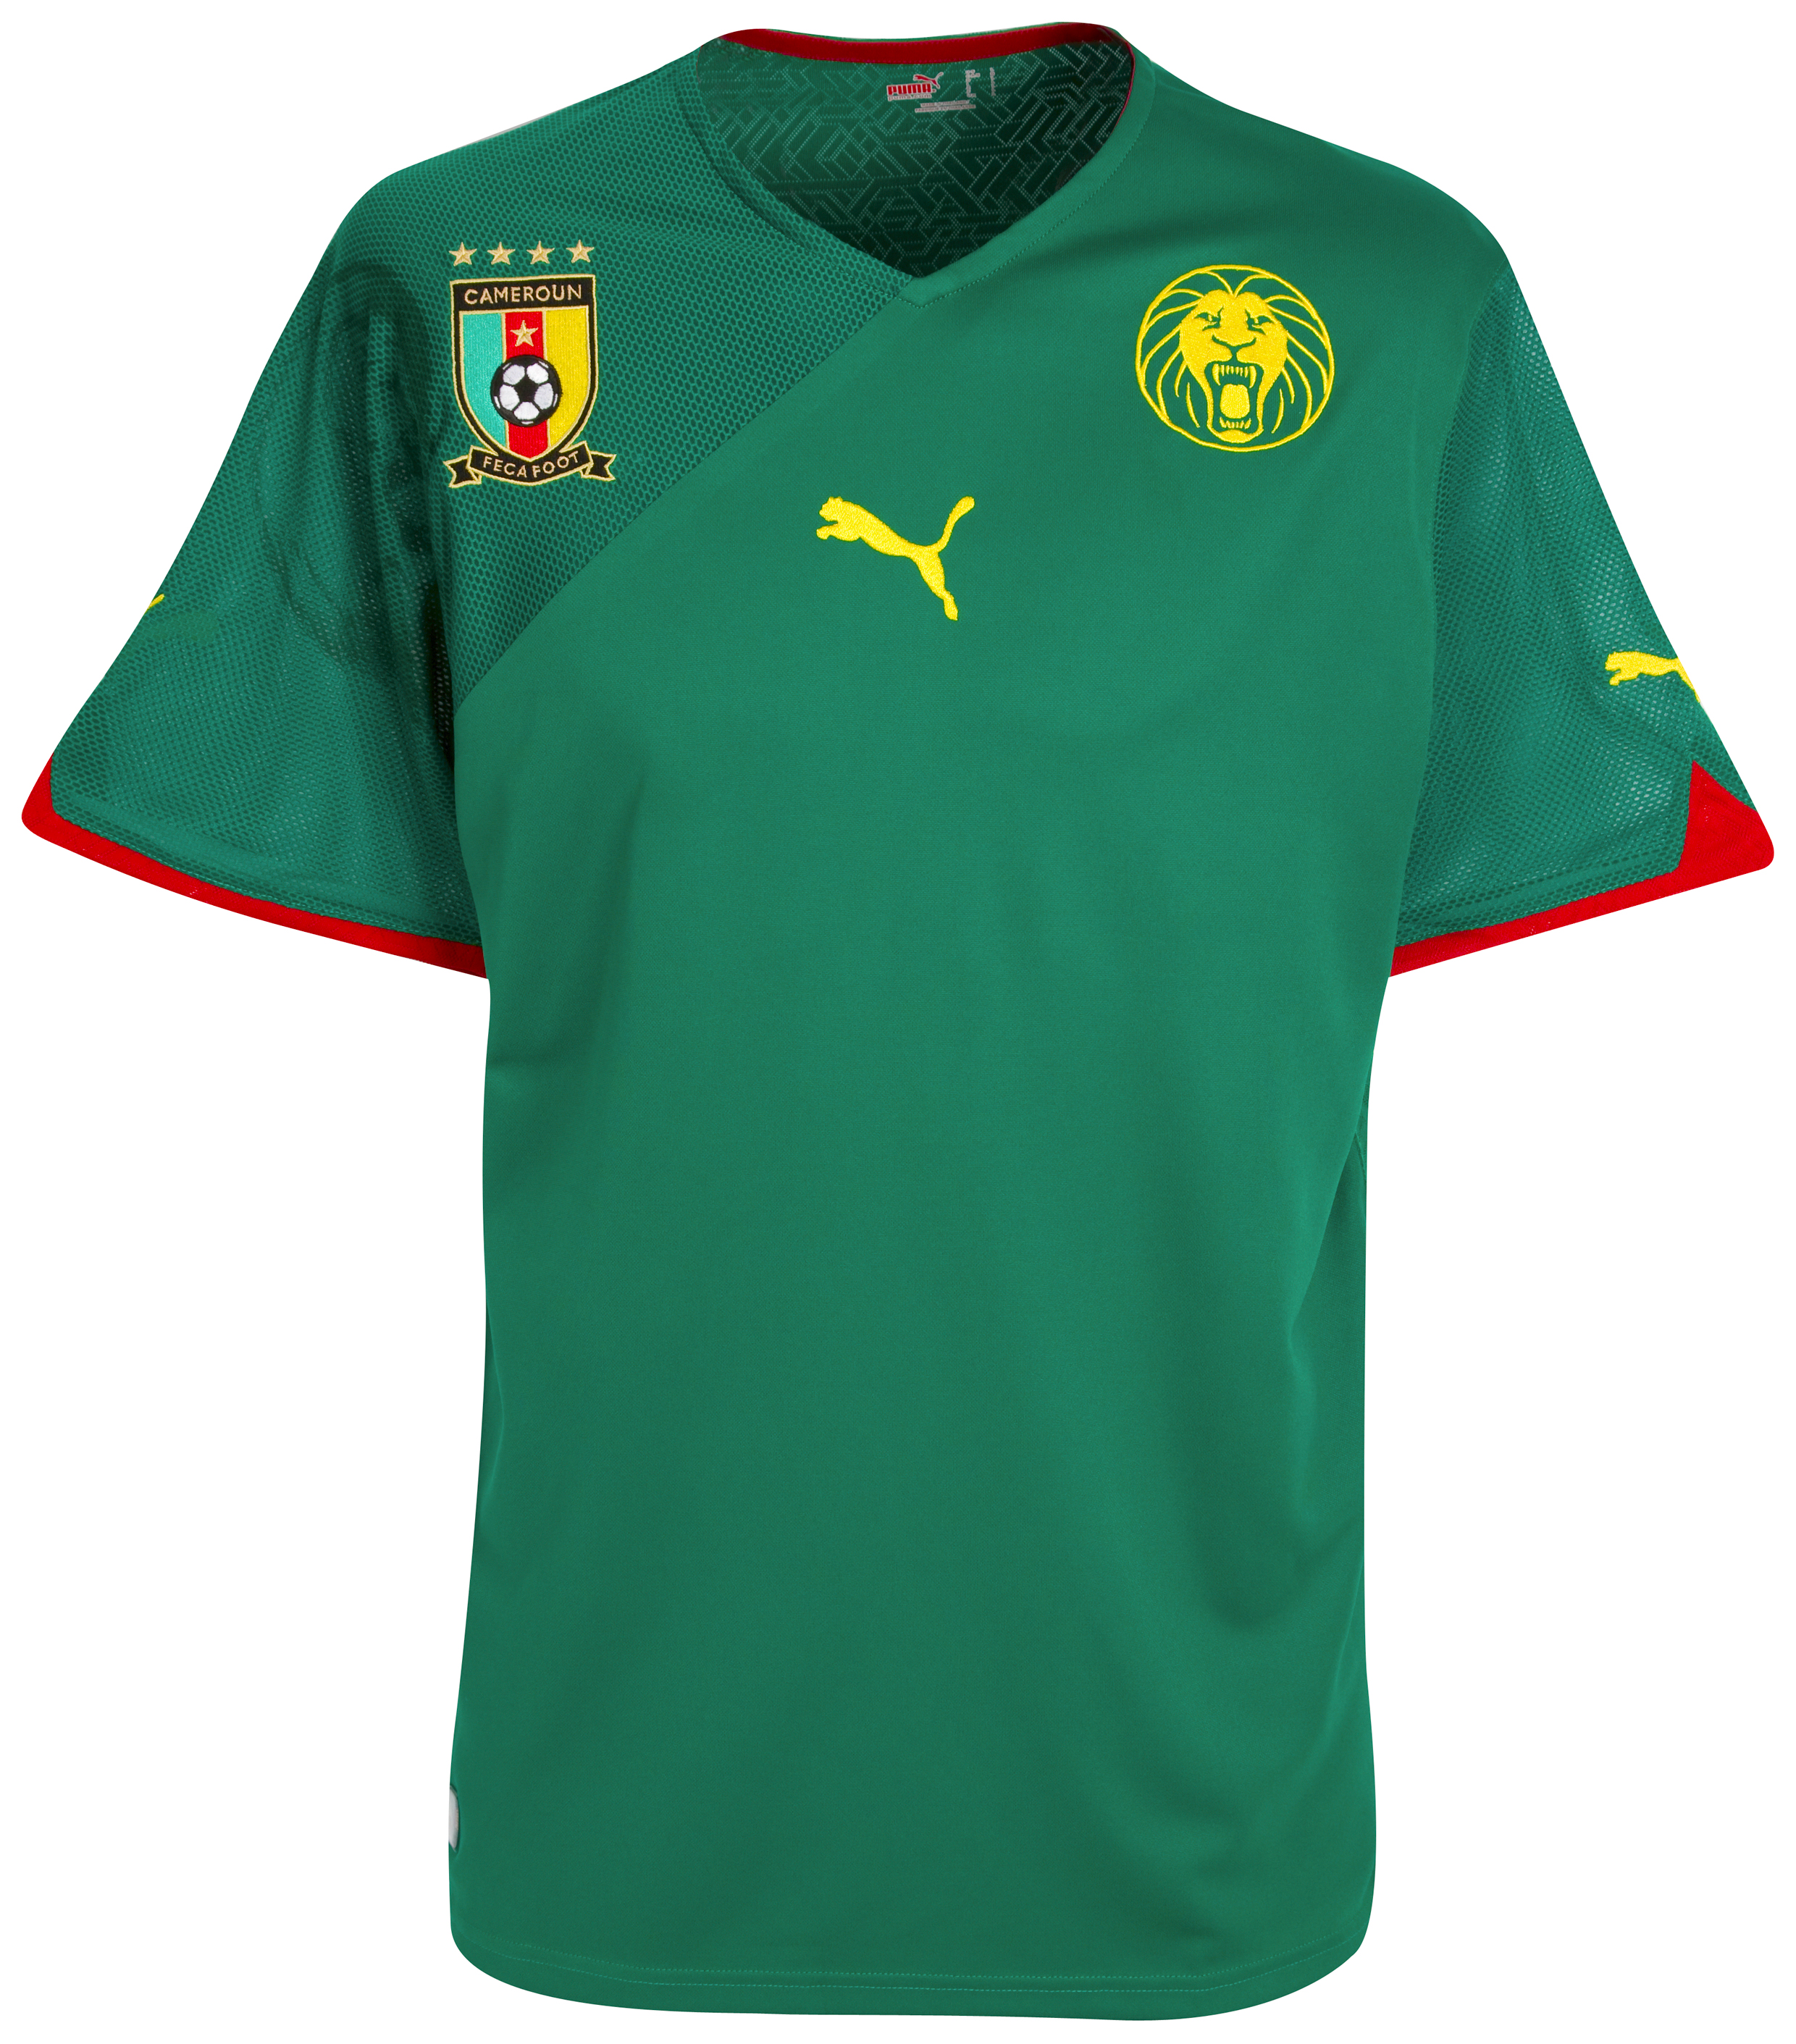 ملابس المنتخبات في كأس العالم 2010 Kb-60872